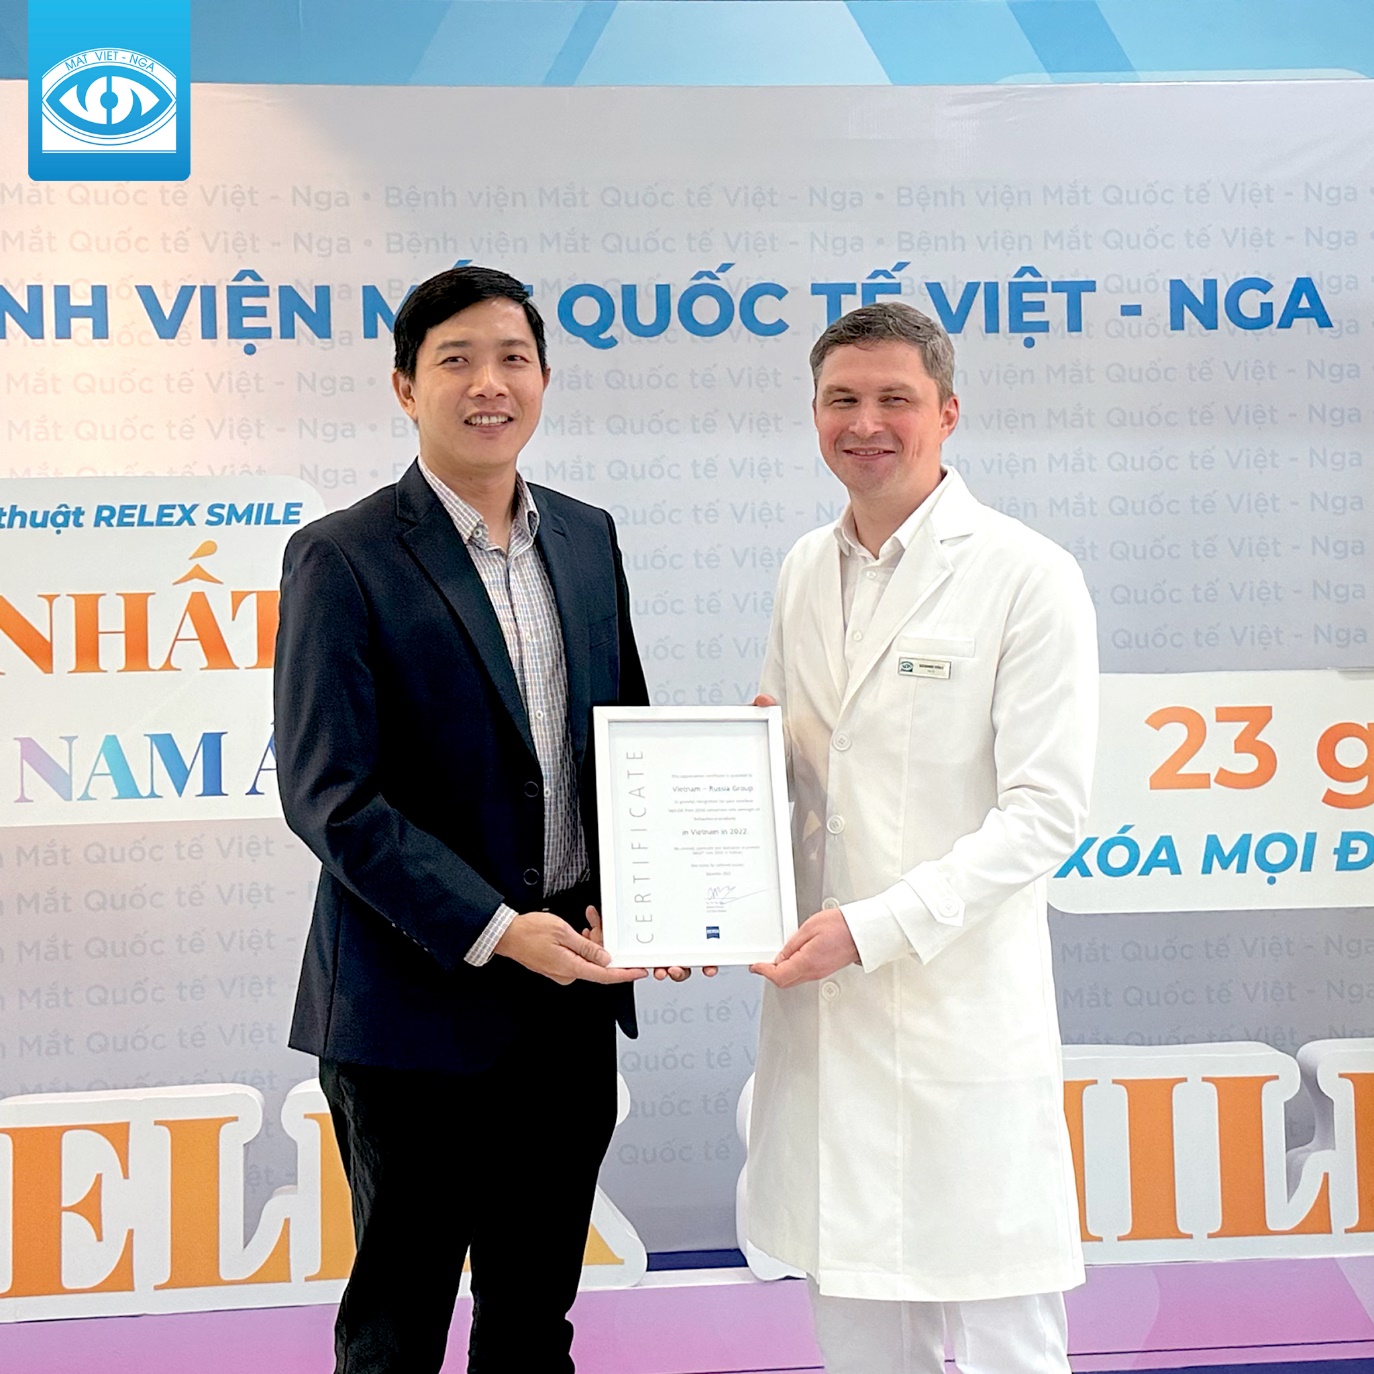 Bệnh Viện Mắt Quốc Tế Việt - Nga vinh dự nhận 4 giải thưởng thành tựu phẫu thuật khúc xạ của khu vực Đông Nam Á - Ảnh 2.